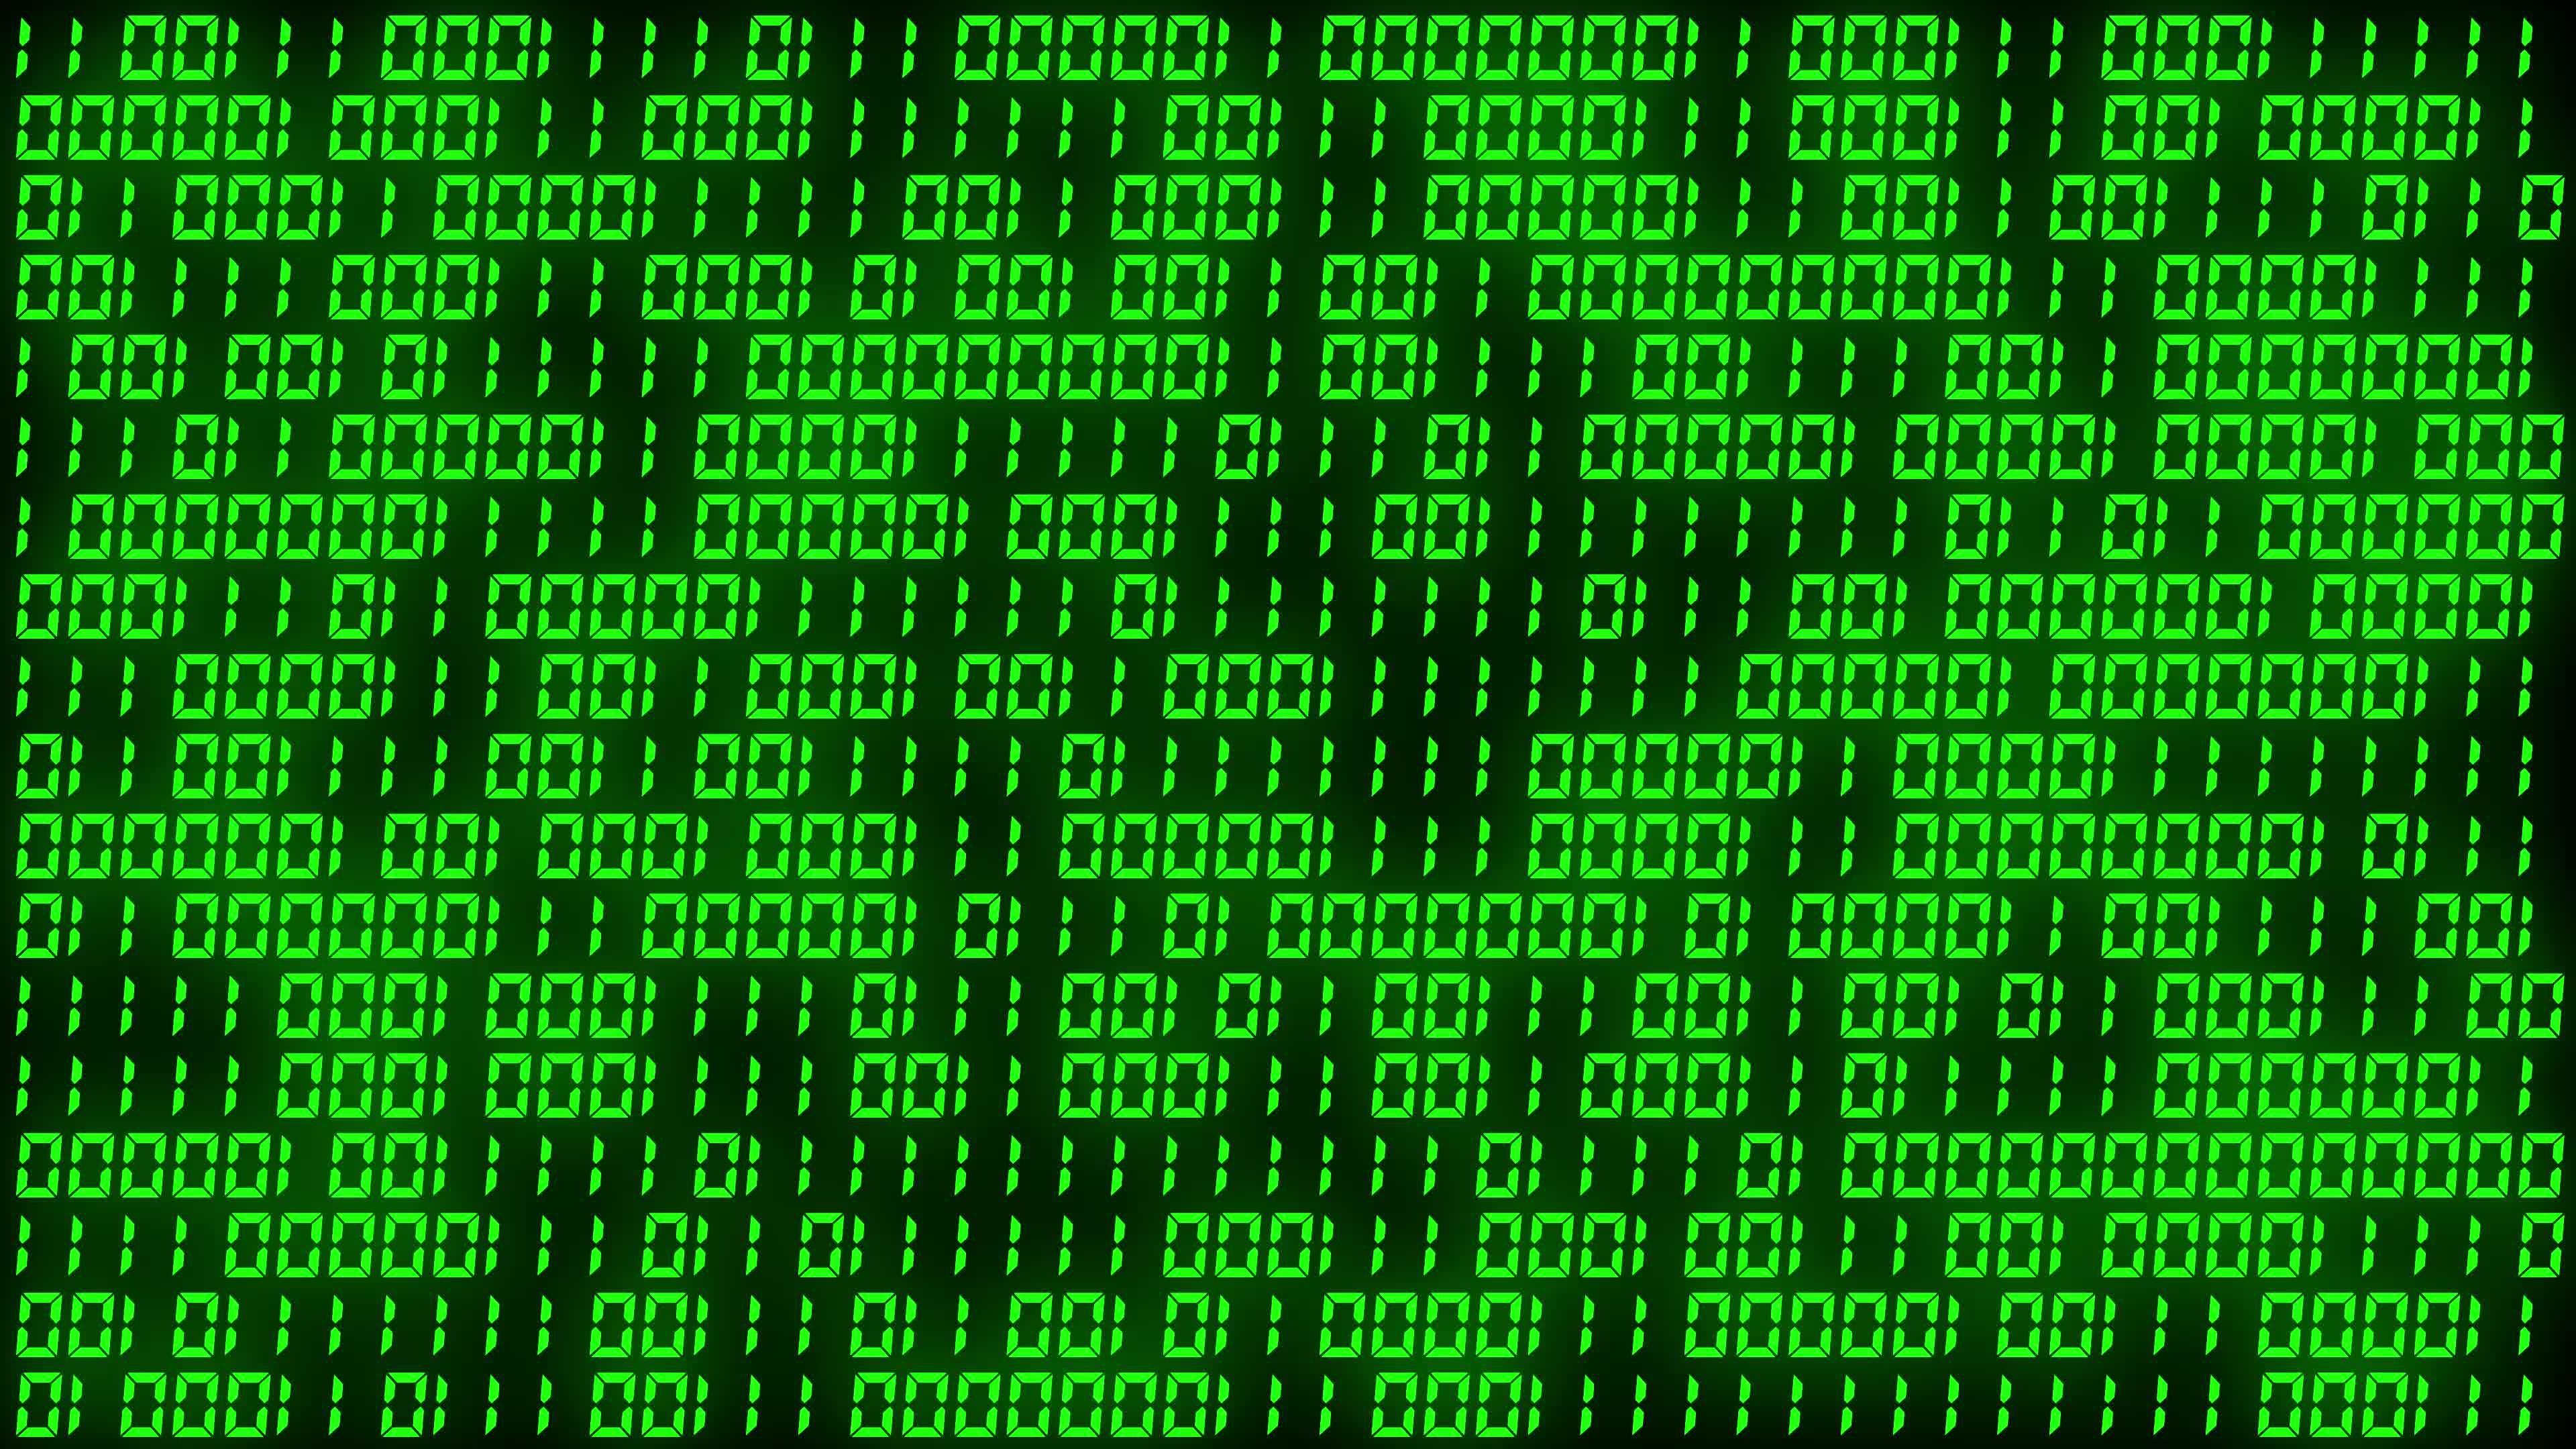 Nếu bạn đang tò mò về Mã nhị phân màu xanh thì hãy xem hình ảnh liên quan! Đây là một trong những công nghệ cơ bản trong lập trình và rất thú vị để tìm hiểu. Hãy cùng khám phá với màu sắc xanh tươi sáng của chúng!